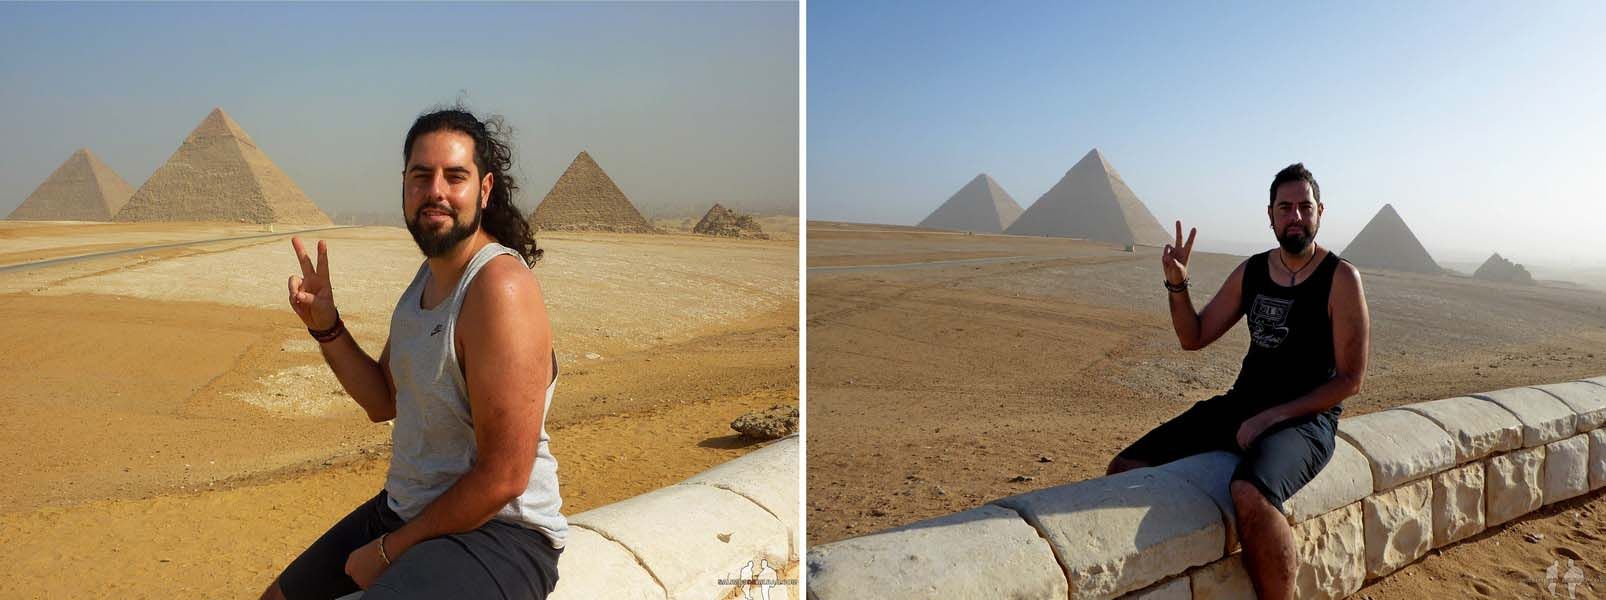 DIARIO Dos semanas en EGIPTO por libre. Katz, comp 2015-2021, Piramides de Giza, Giza